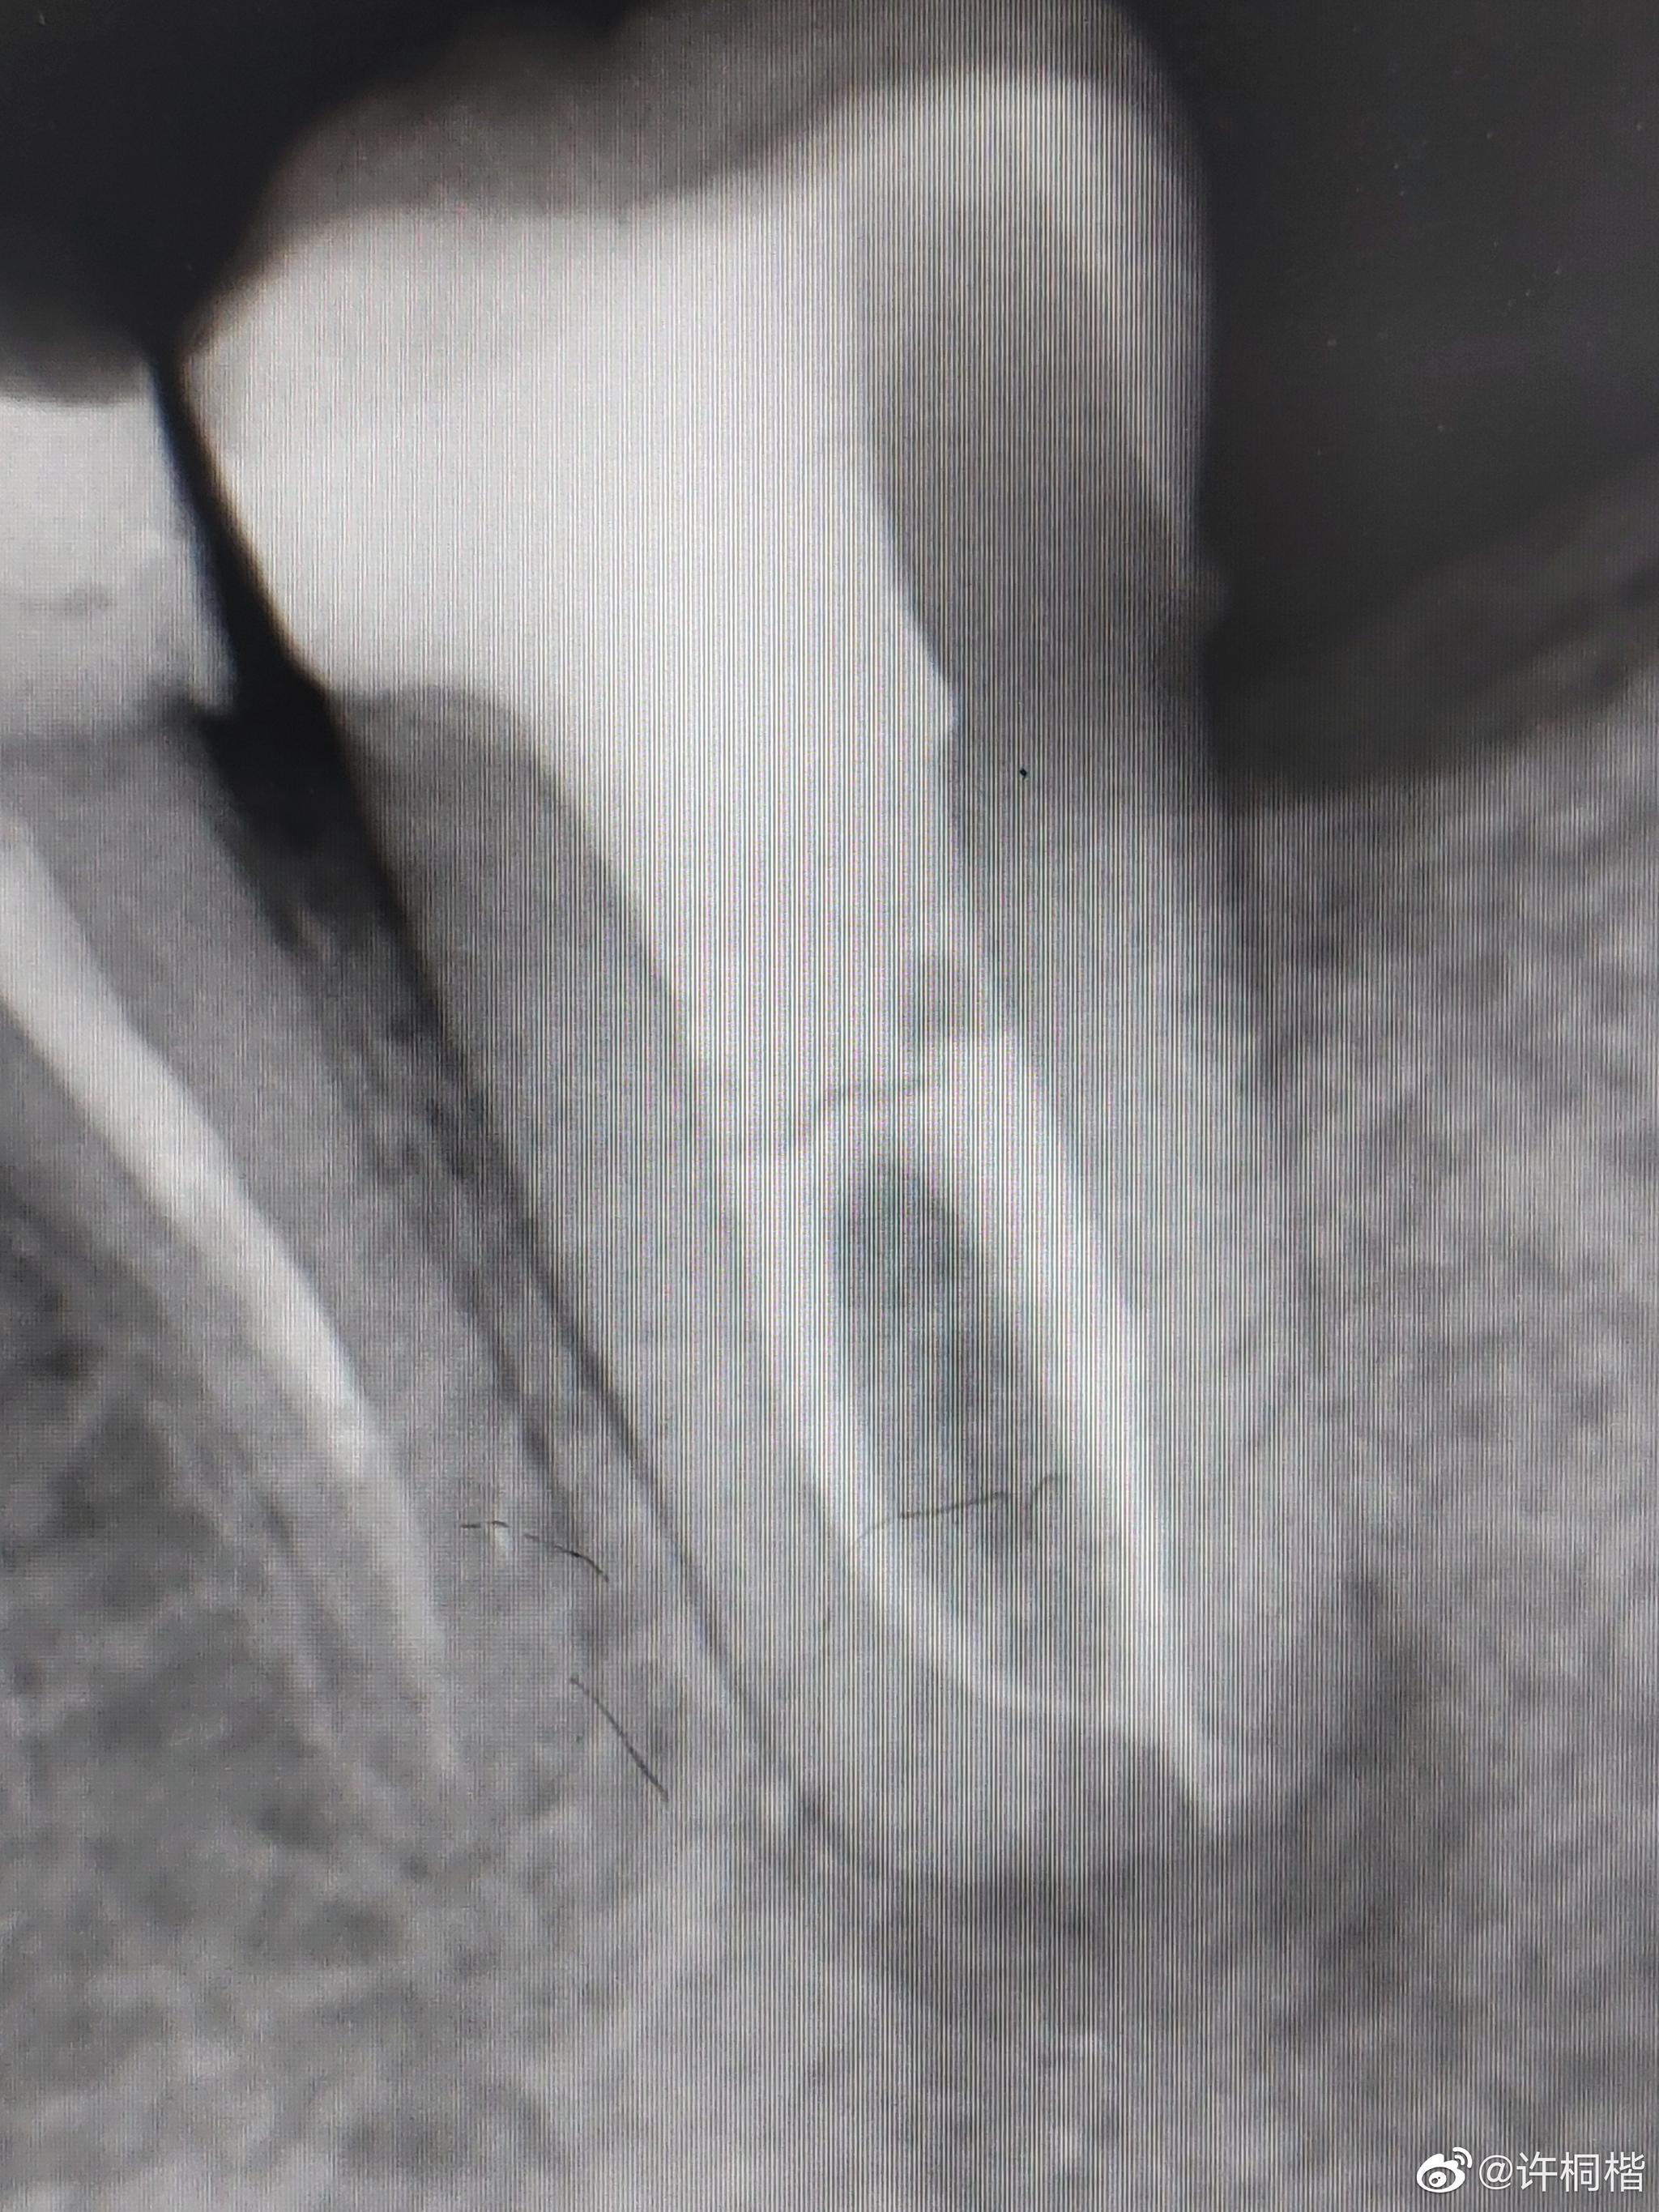 下牙咬东西不舒服图一示牙根周围有病变去年五月份做的根管治疗